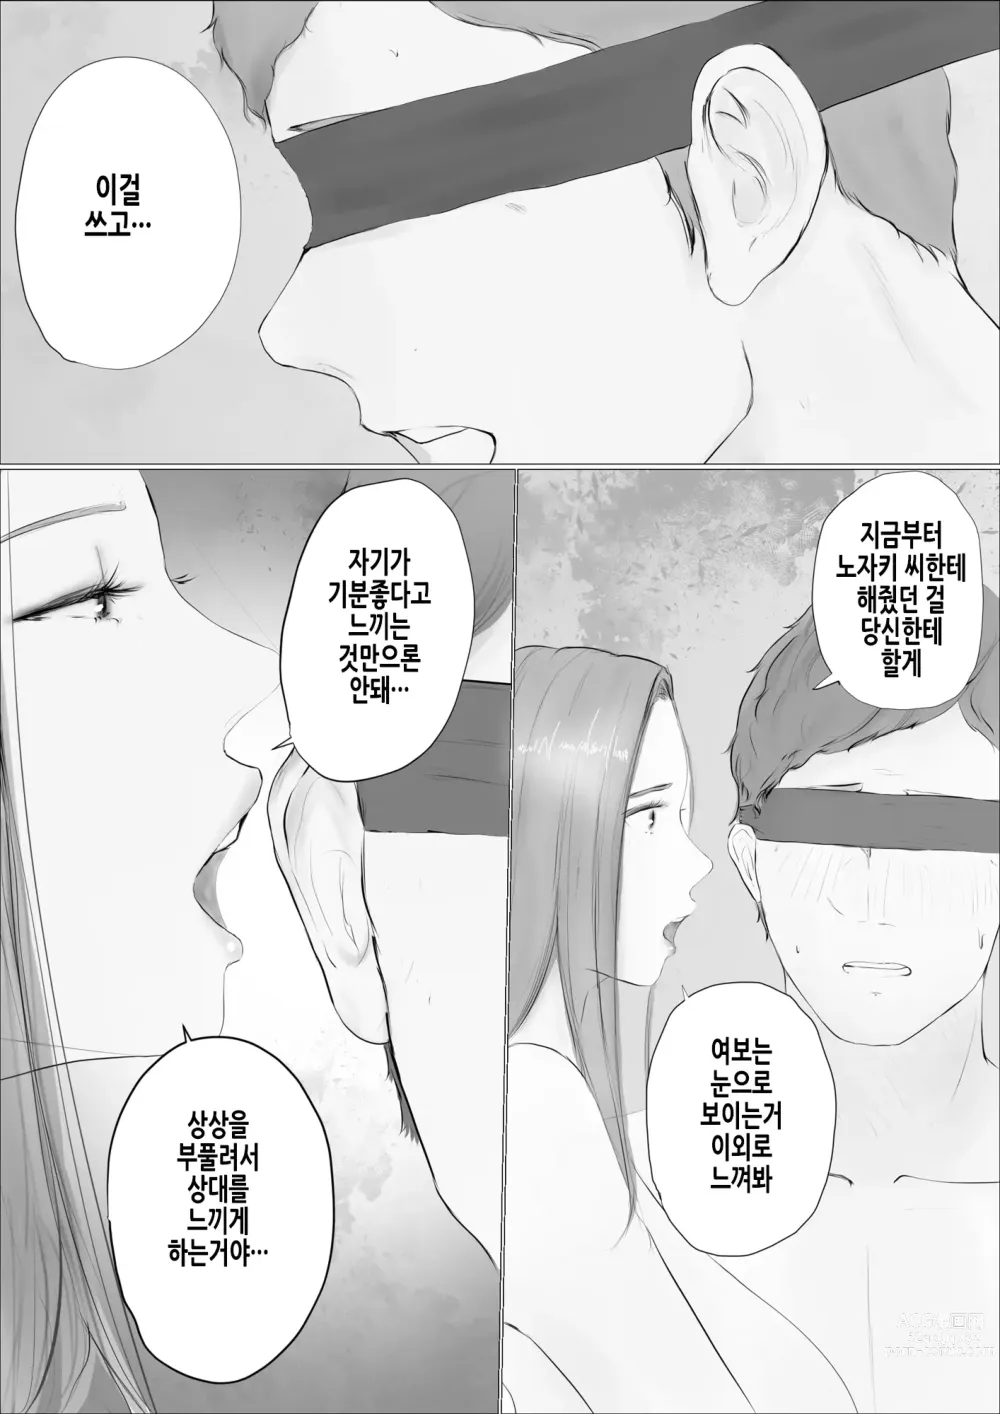 Page 24 of doujinshi 교환 이야기 ~2일차~